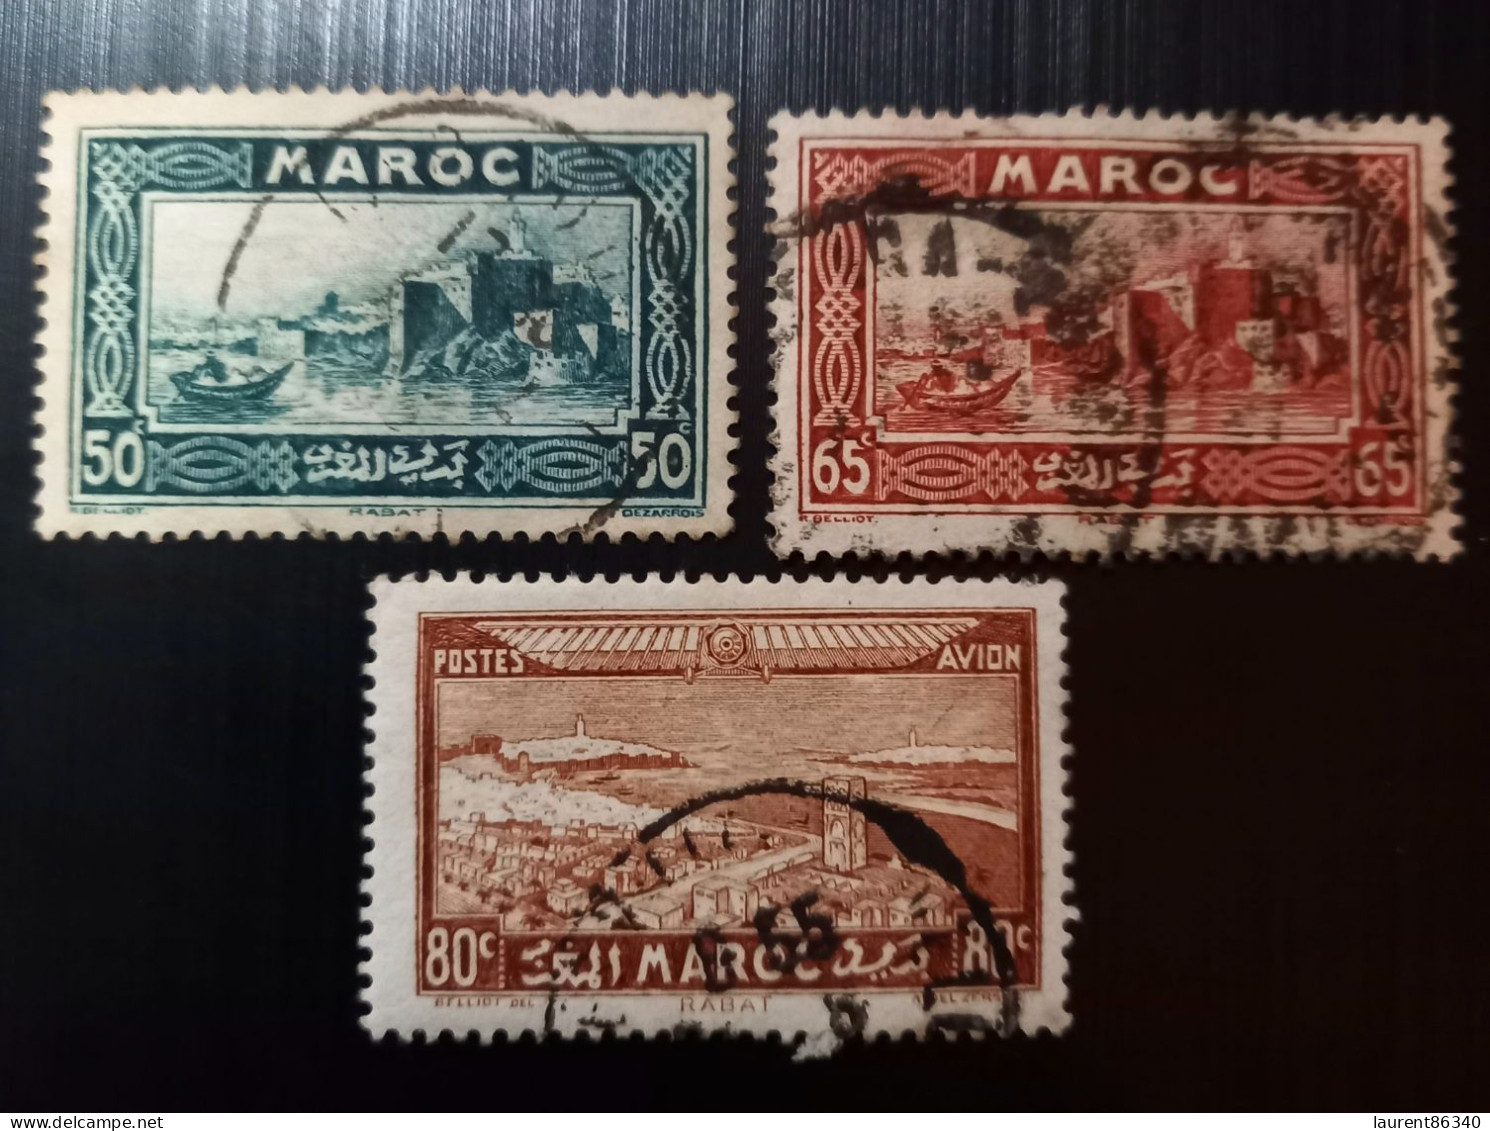 Maroc 1933 Local Motives & 1933 Airmail - Views Of The City  Modèle: R. Beliot Gravure: Del Rieu Lot 1 - Usati